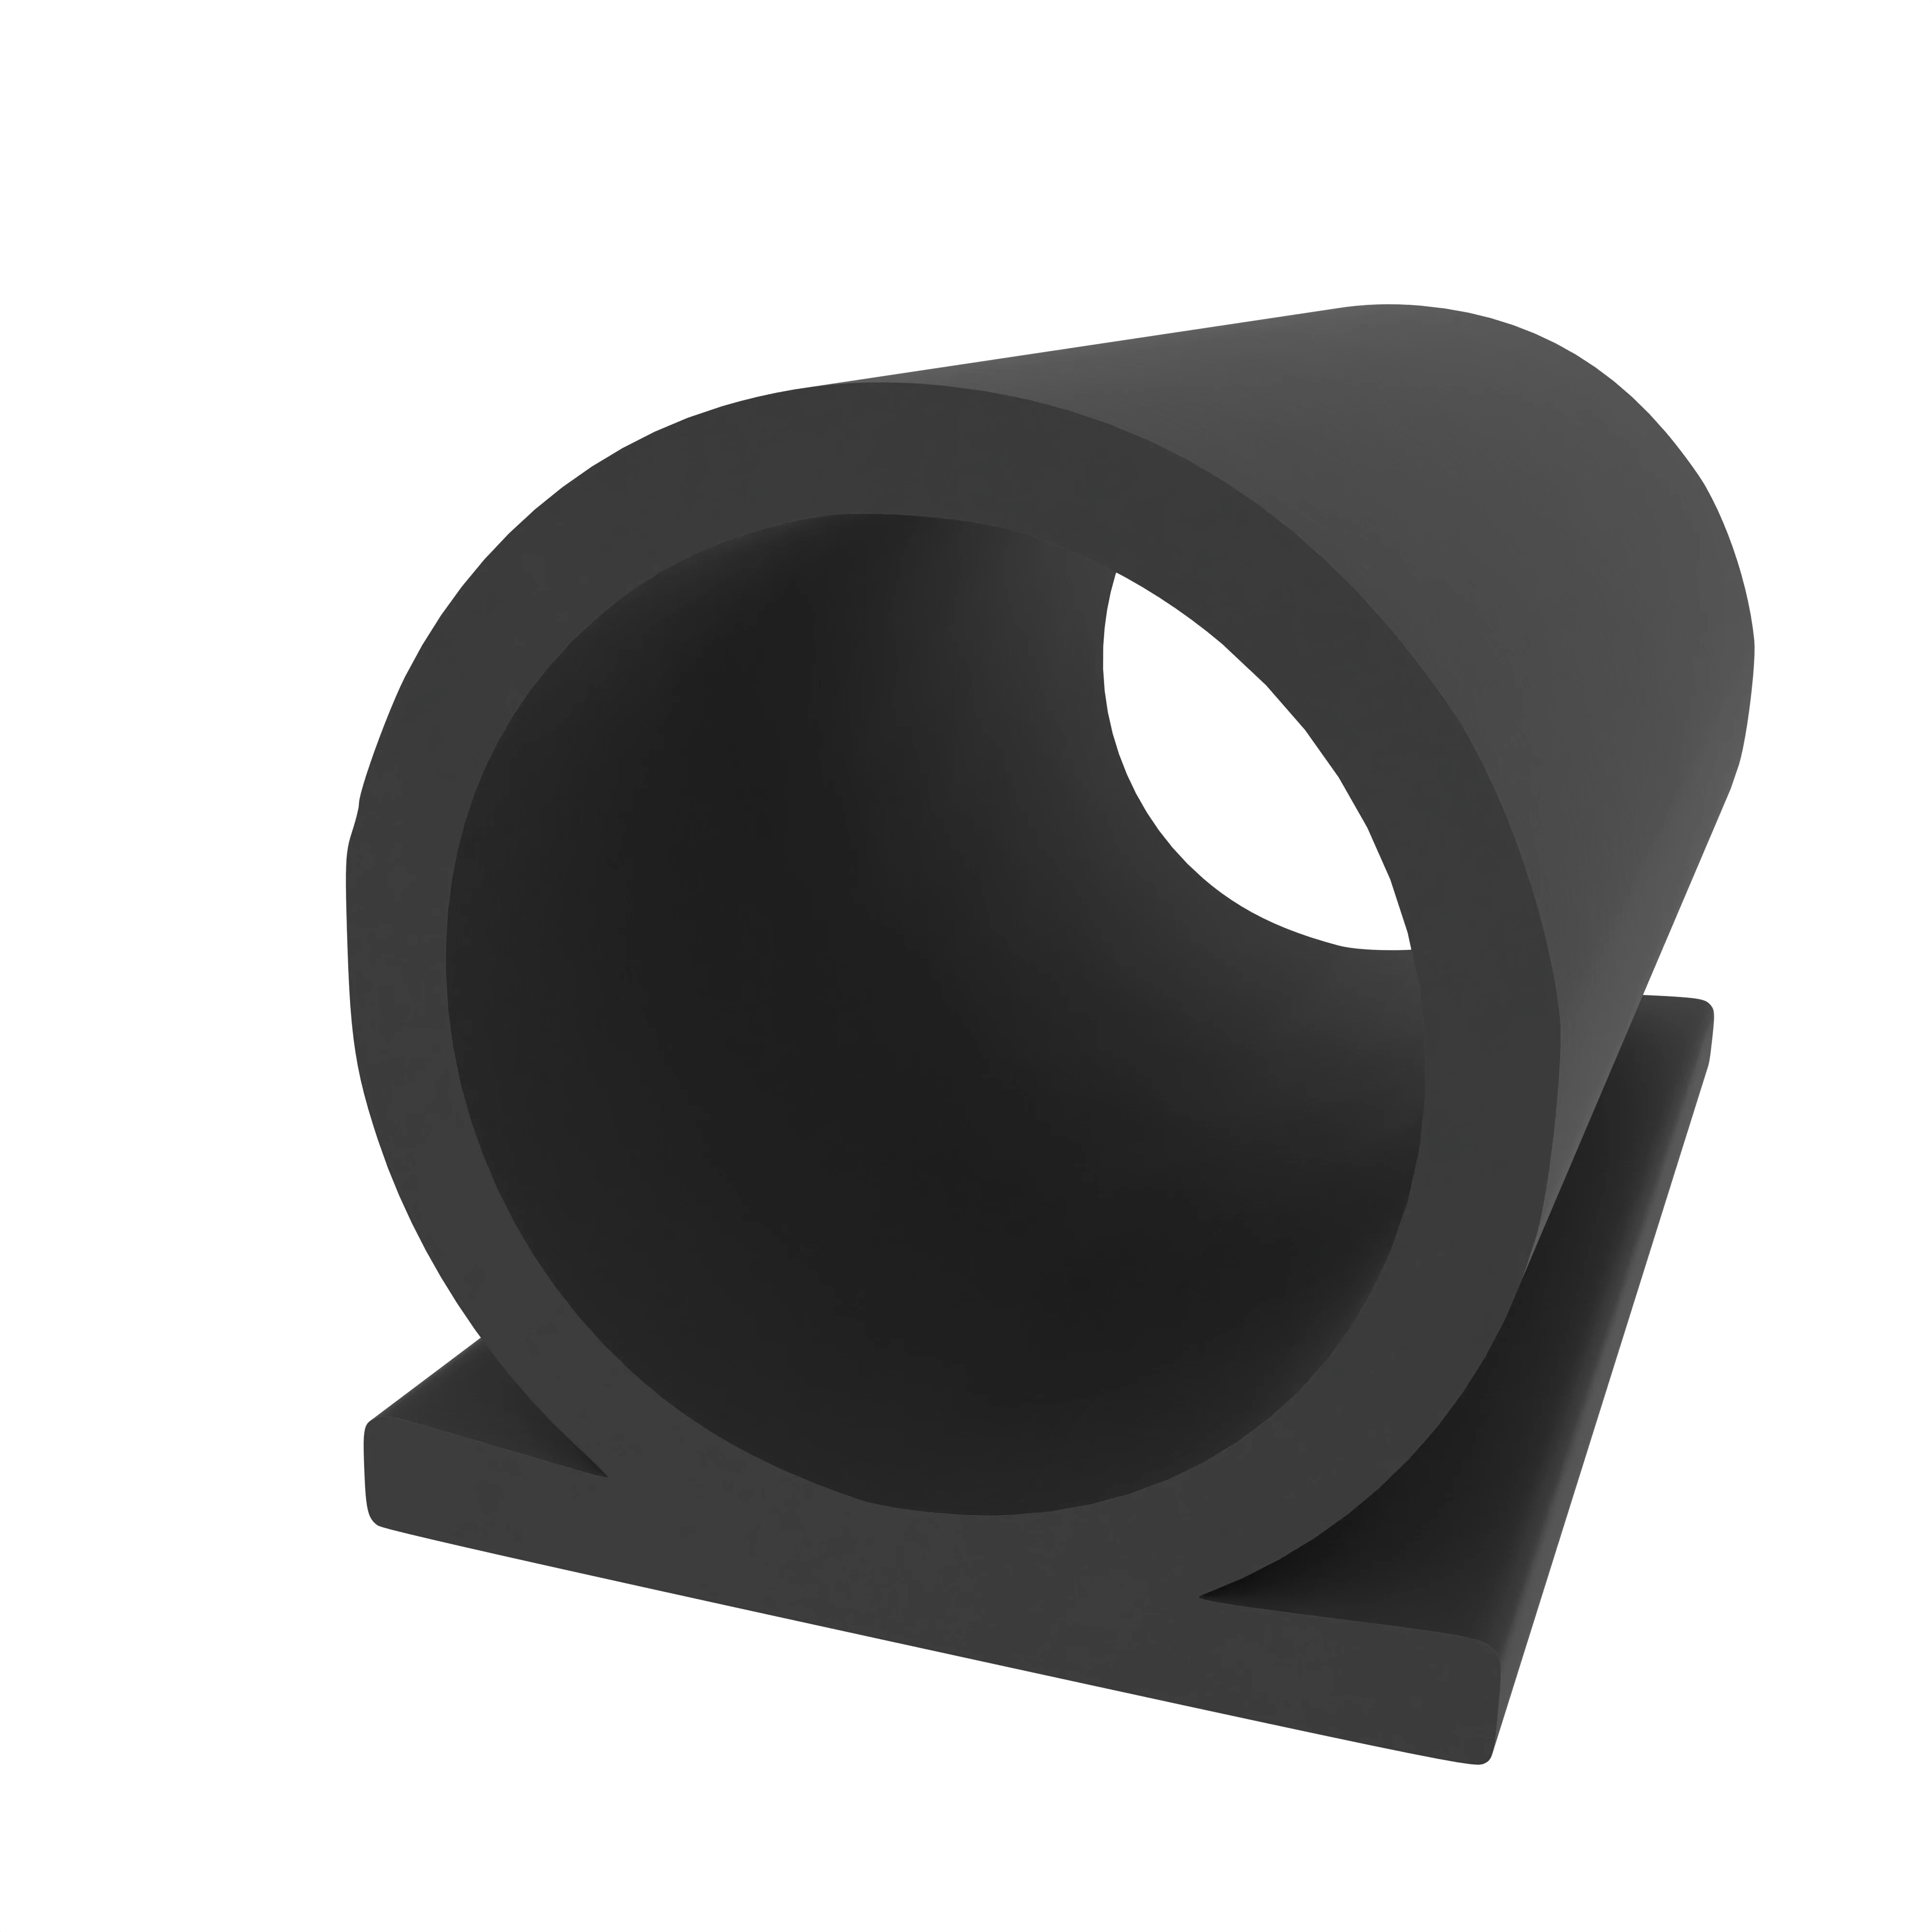 Omegadichtung 8 mm breit in schwarz